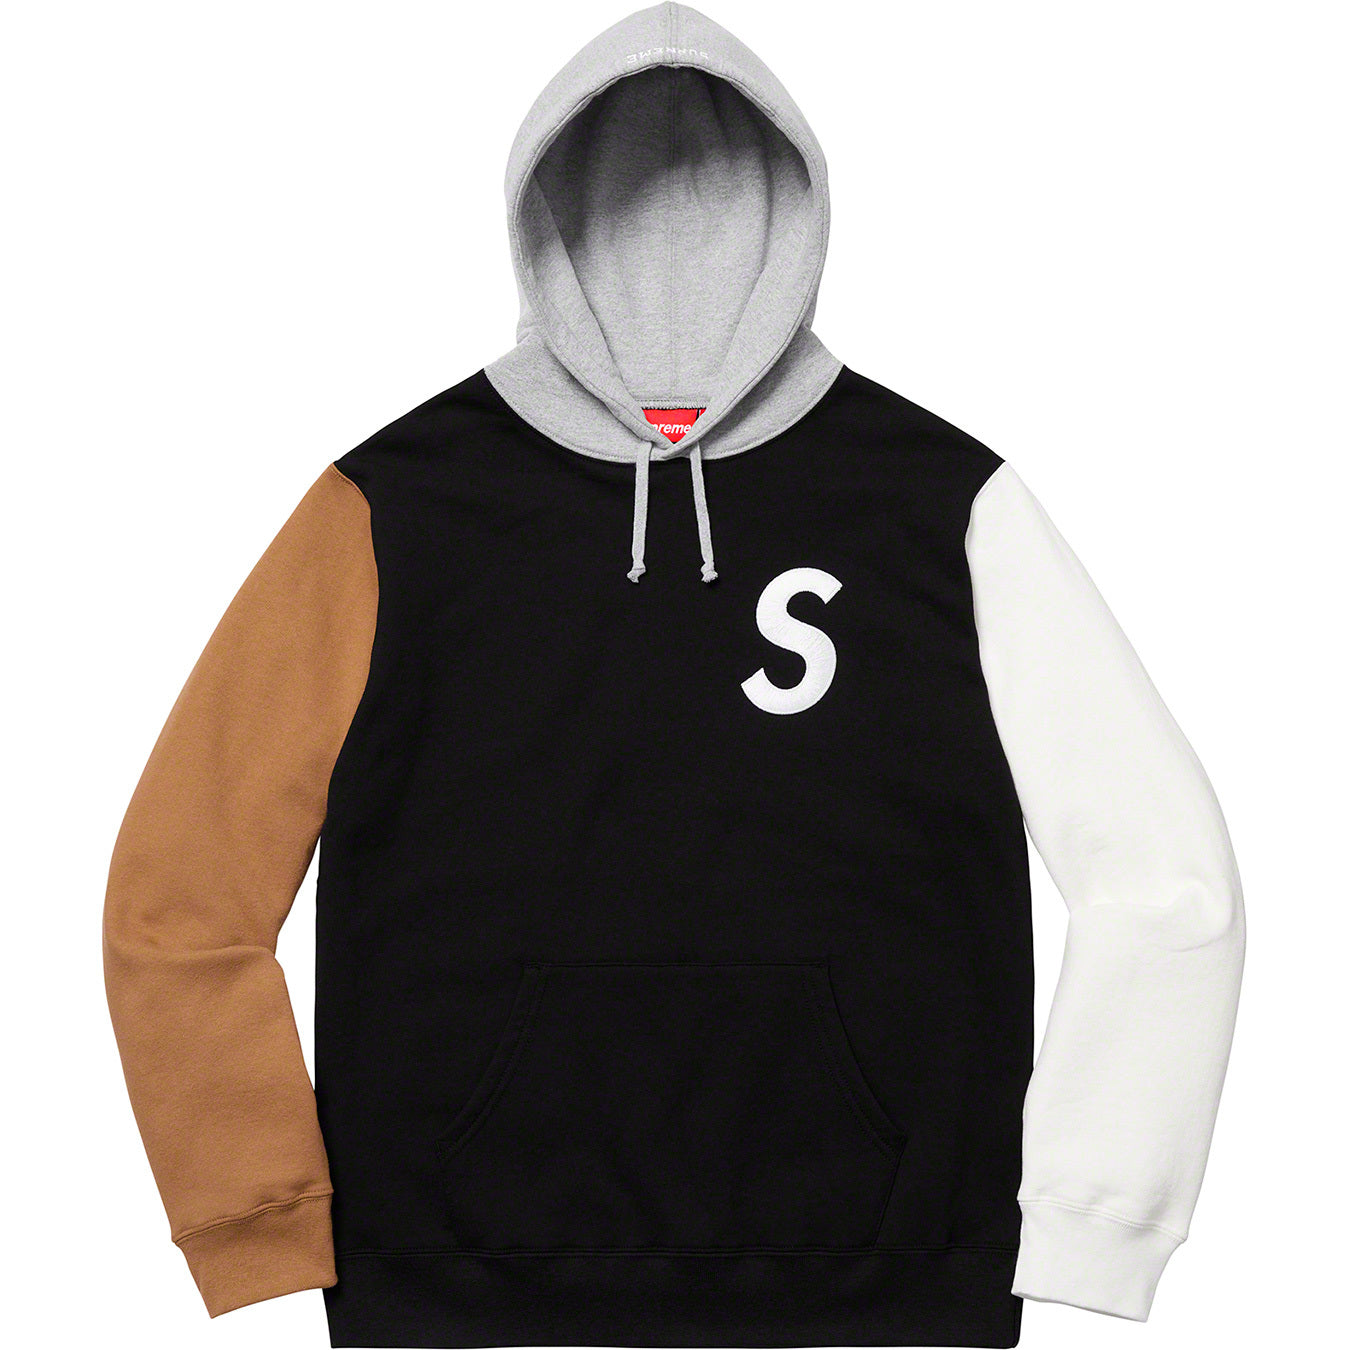 最適な価格 S S Logo Colorblocked Logo Hooded Colorblocked Sweatshirt 